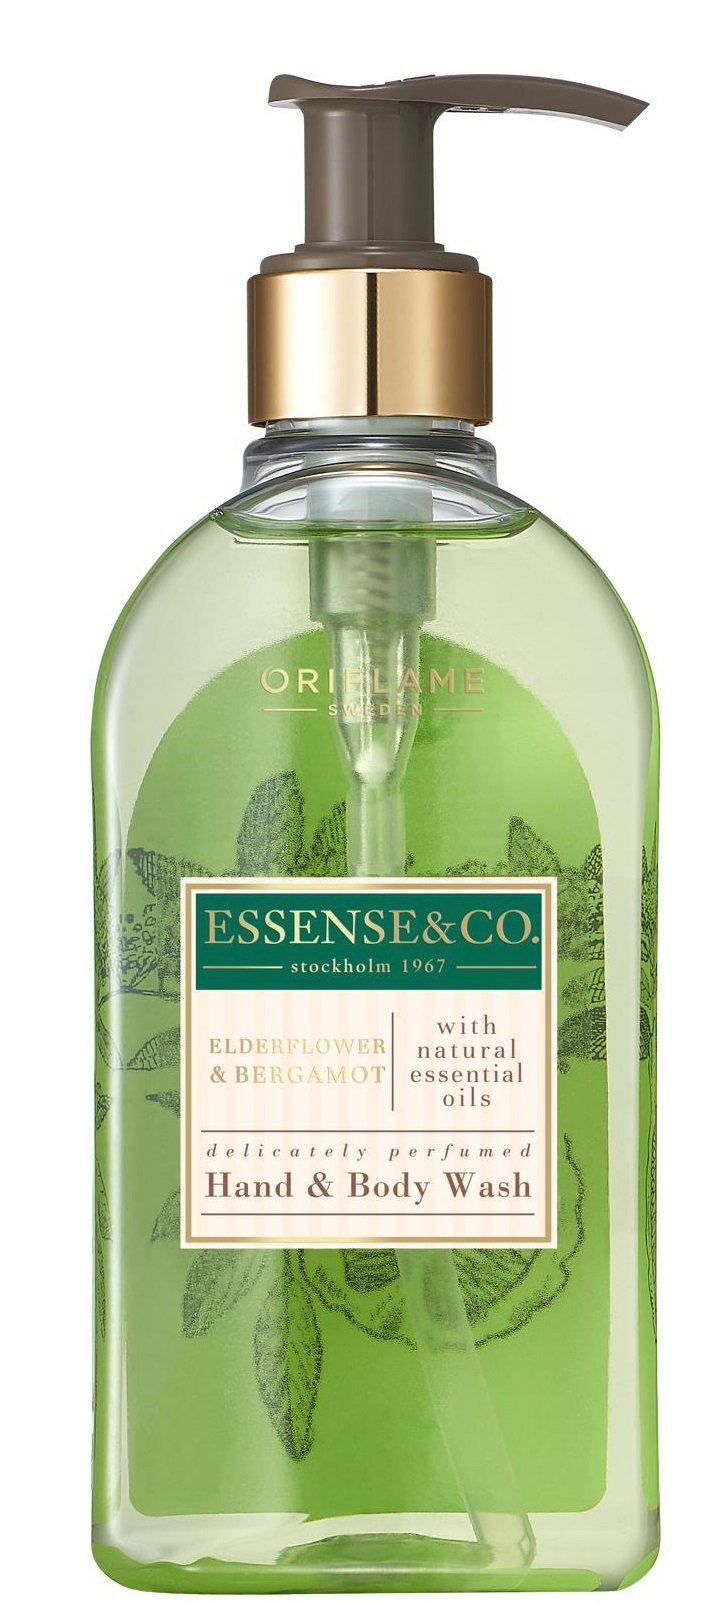 Sprchový gel s bezovým květem a bergamotem Essense & Co, Oriflame, 249 Kč (300 ml)